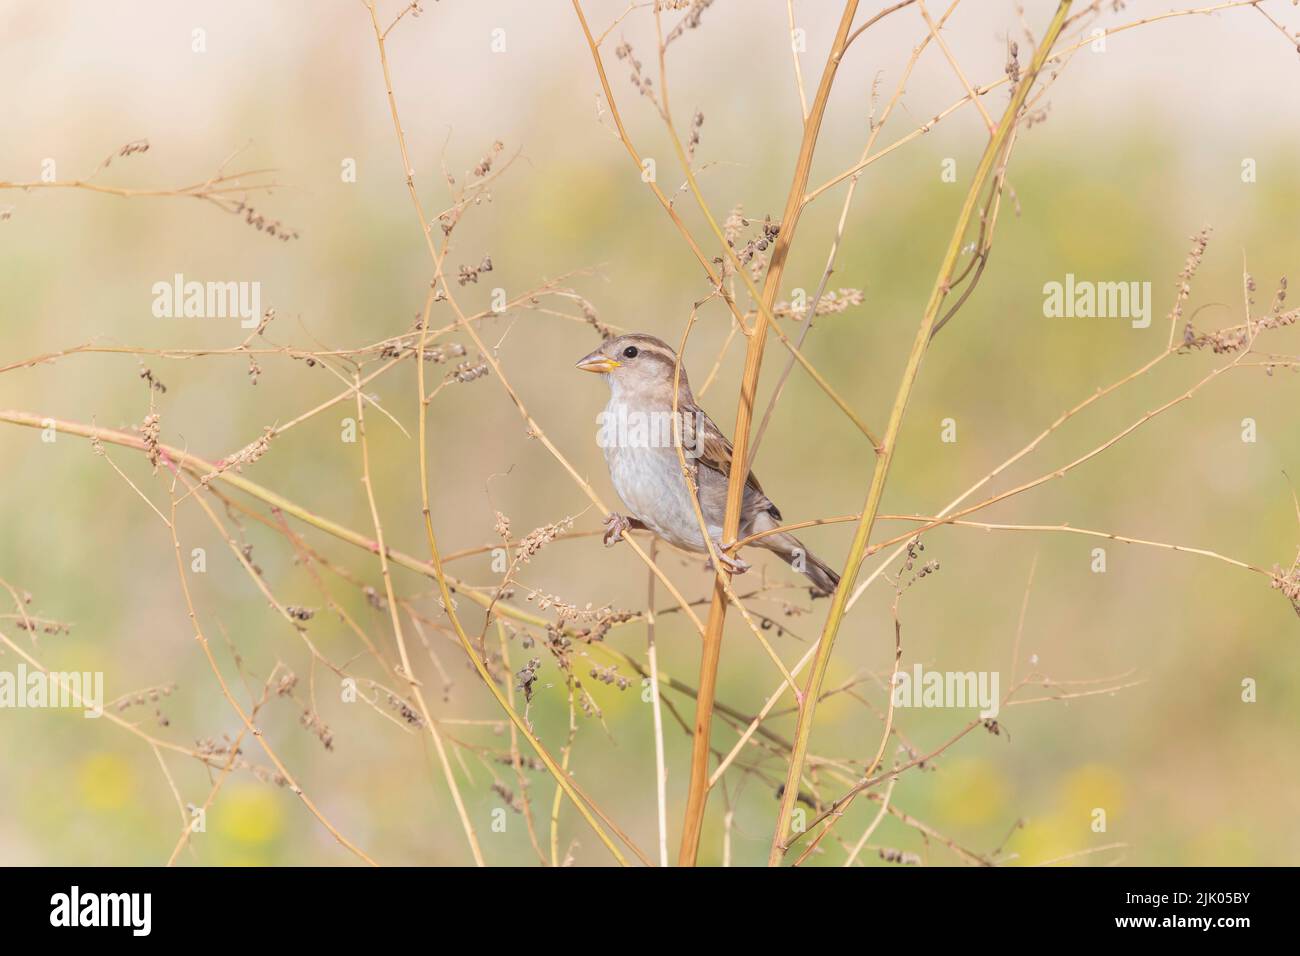 vista sobre sparrow sentado en la planta en el prado Foto de stock